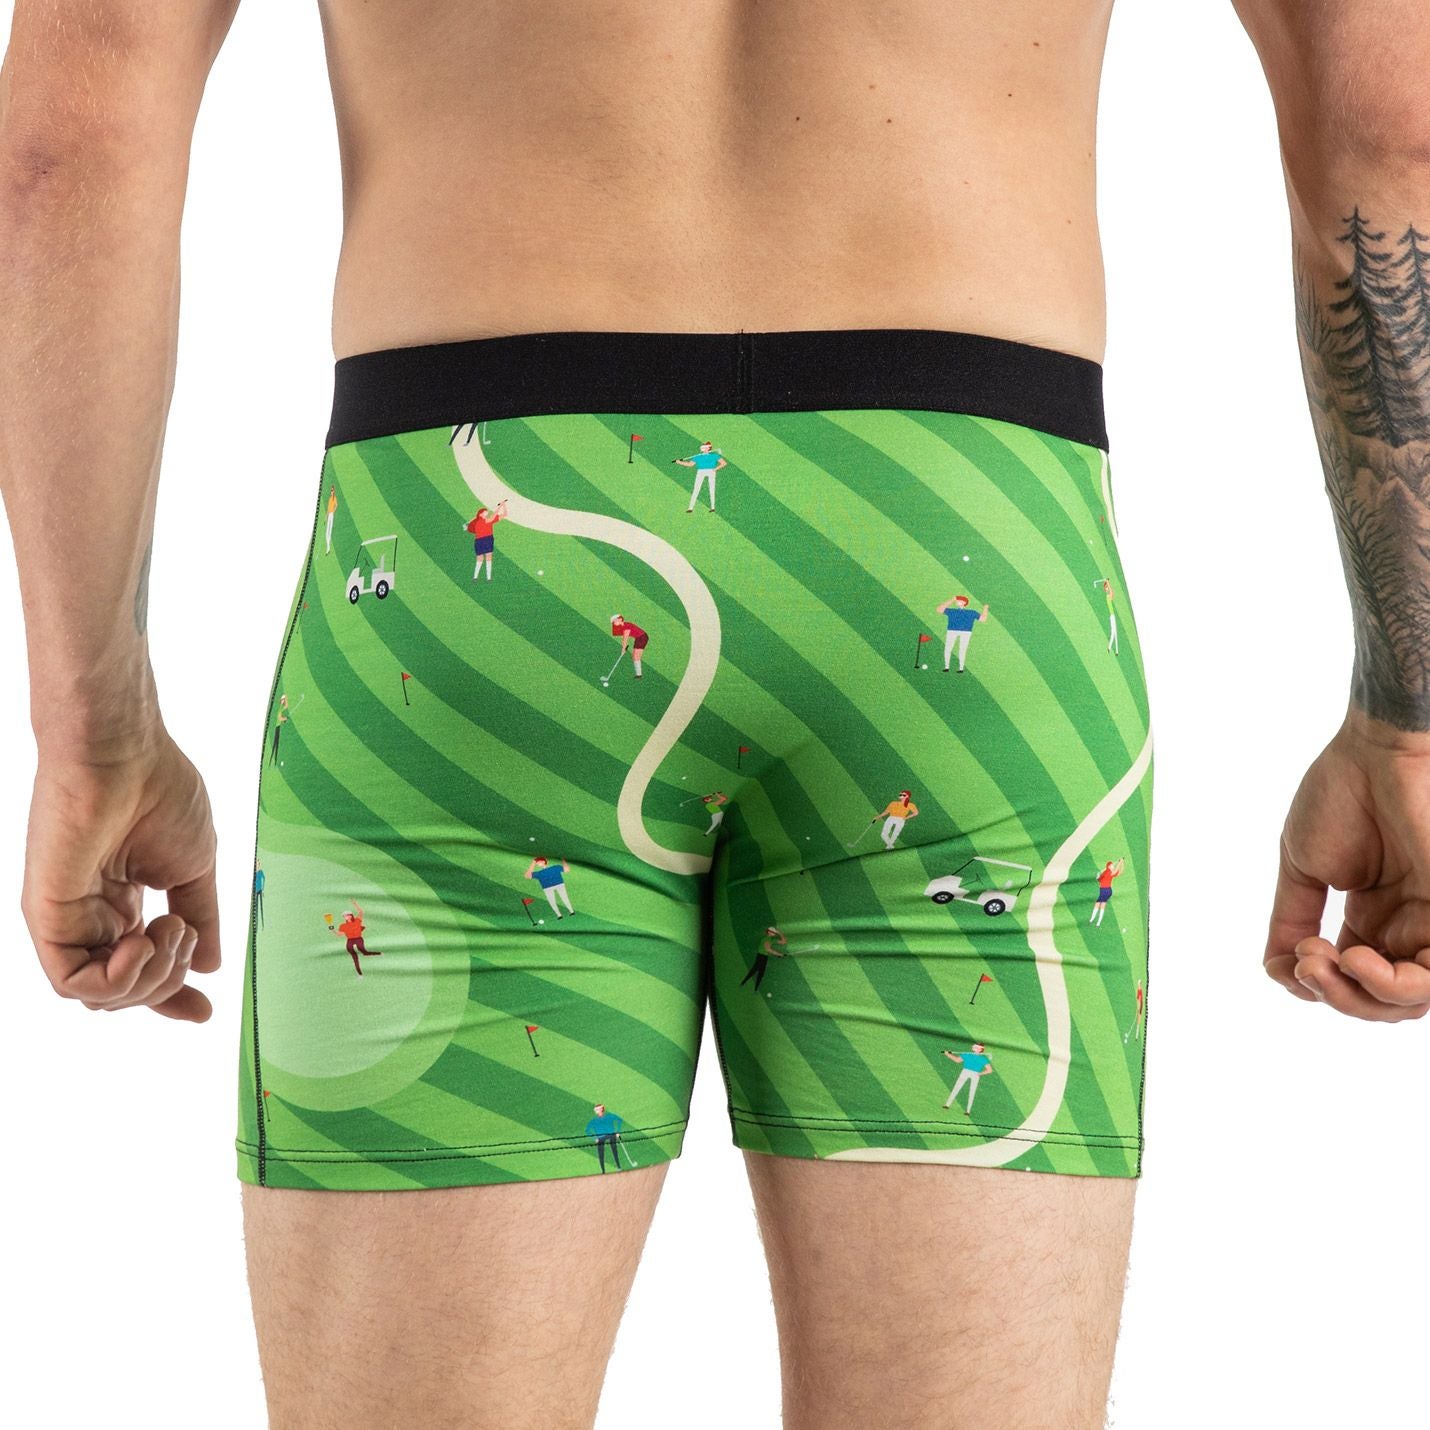 Golf Underwear, Golf Underpants, Sports Underwear,underpants